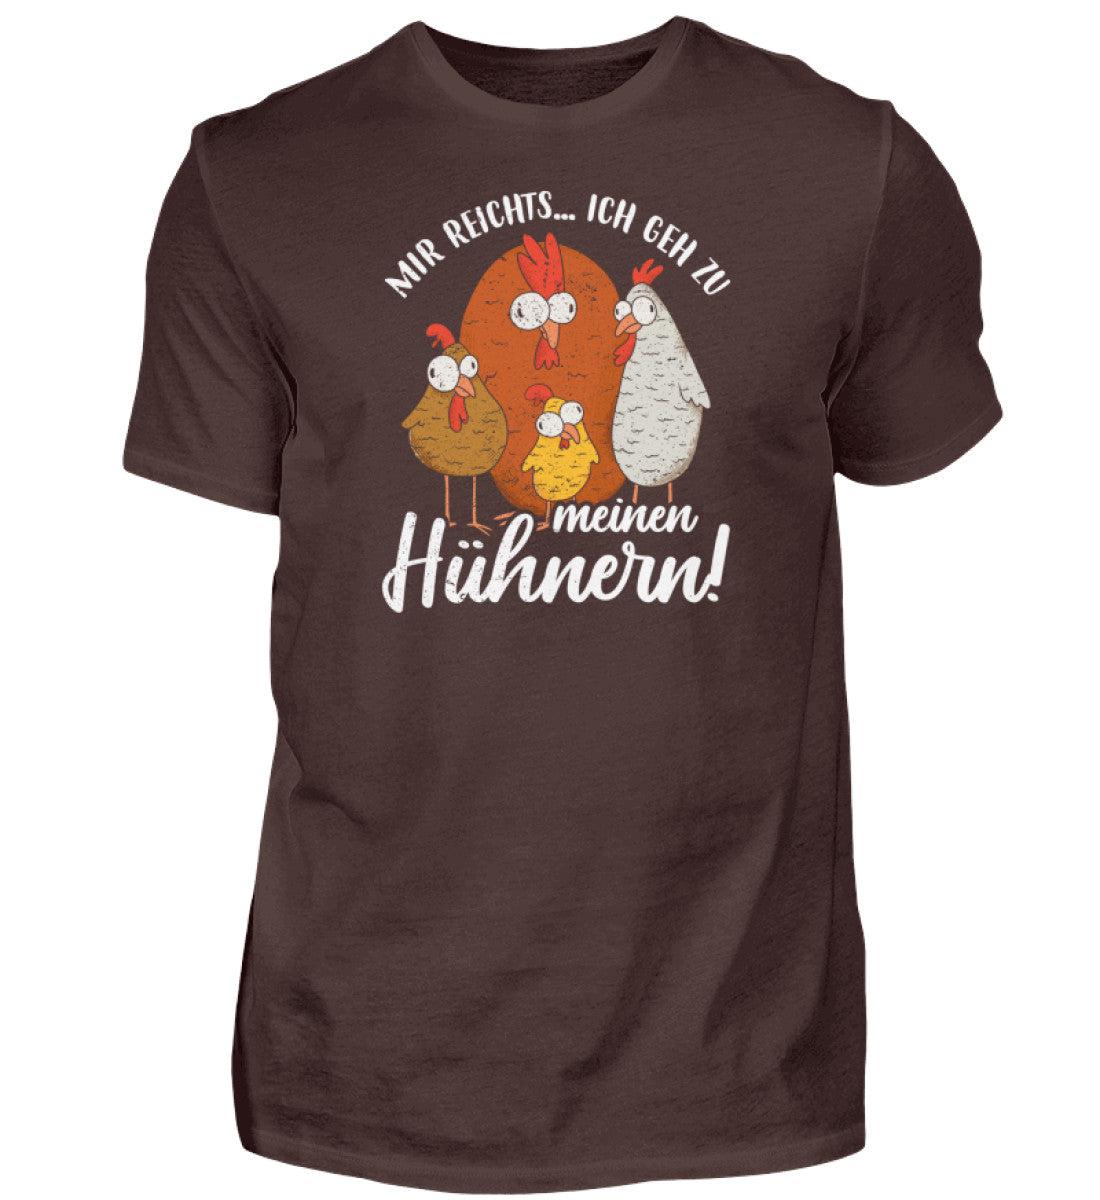 Mir reichts ich geh zu meinen Hühnern · Herren T-Shirt-Herren Basic T-Shirt-Brown-S-Agrarstarz